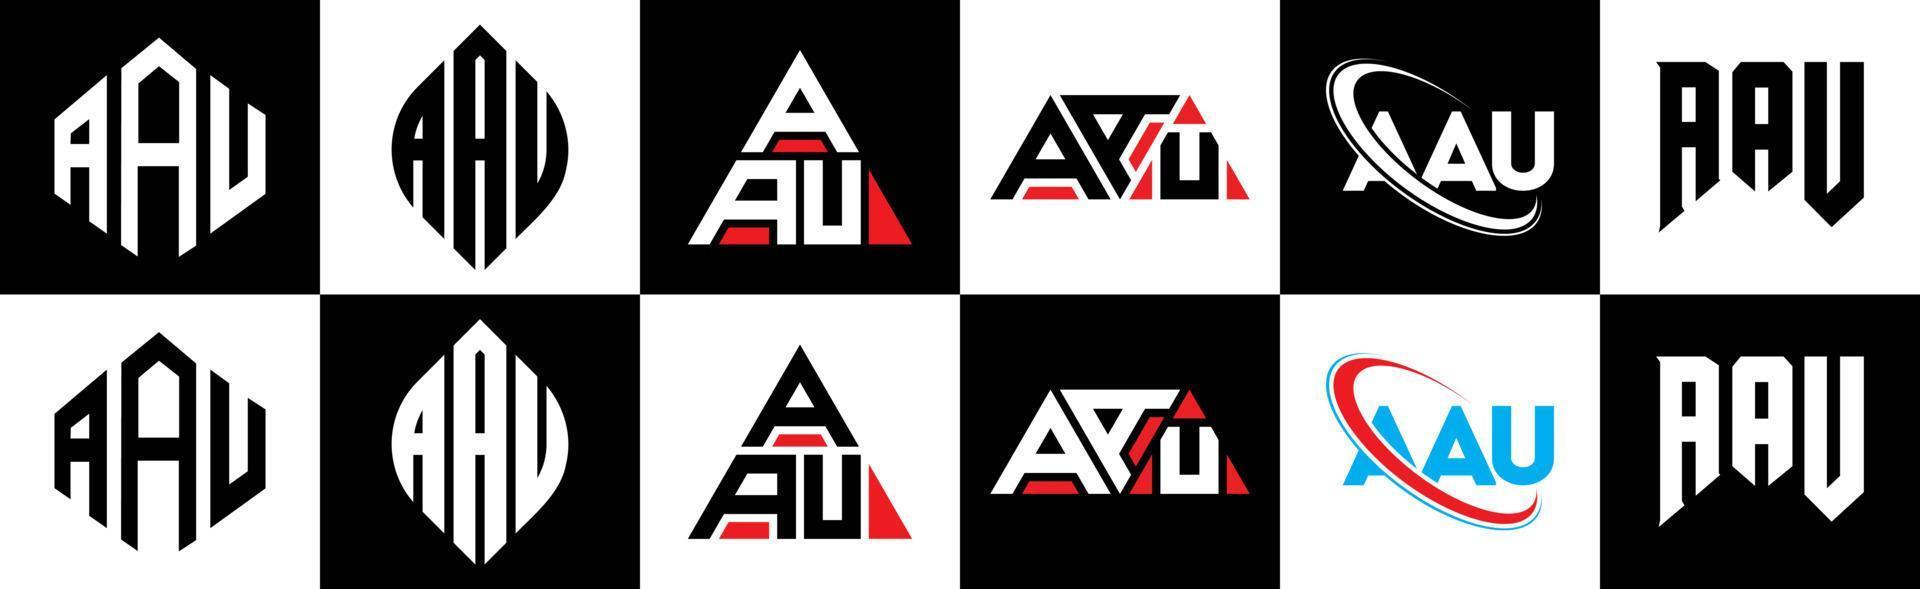 aau-Buchstaben-Logo-Design in sechs Stilen. aau-polygon, kreis, dreieck, sechseck, flacher und einfacher stil mit schwarz-weißem buchstabenlogo in einer zeichenfläche. aau minimalistisches und klassisches Logo vektor